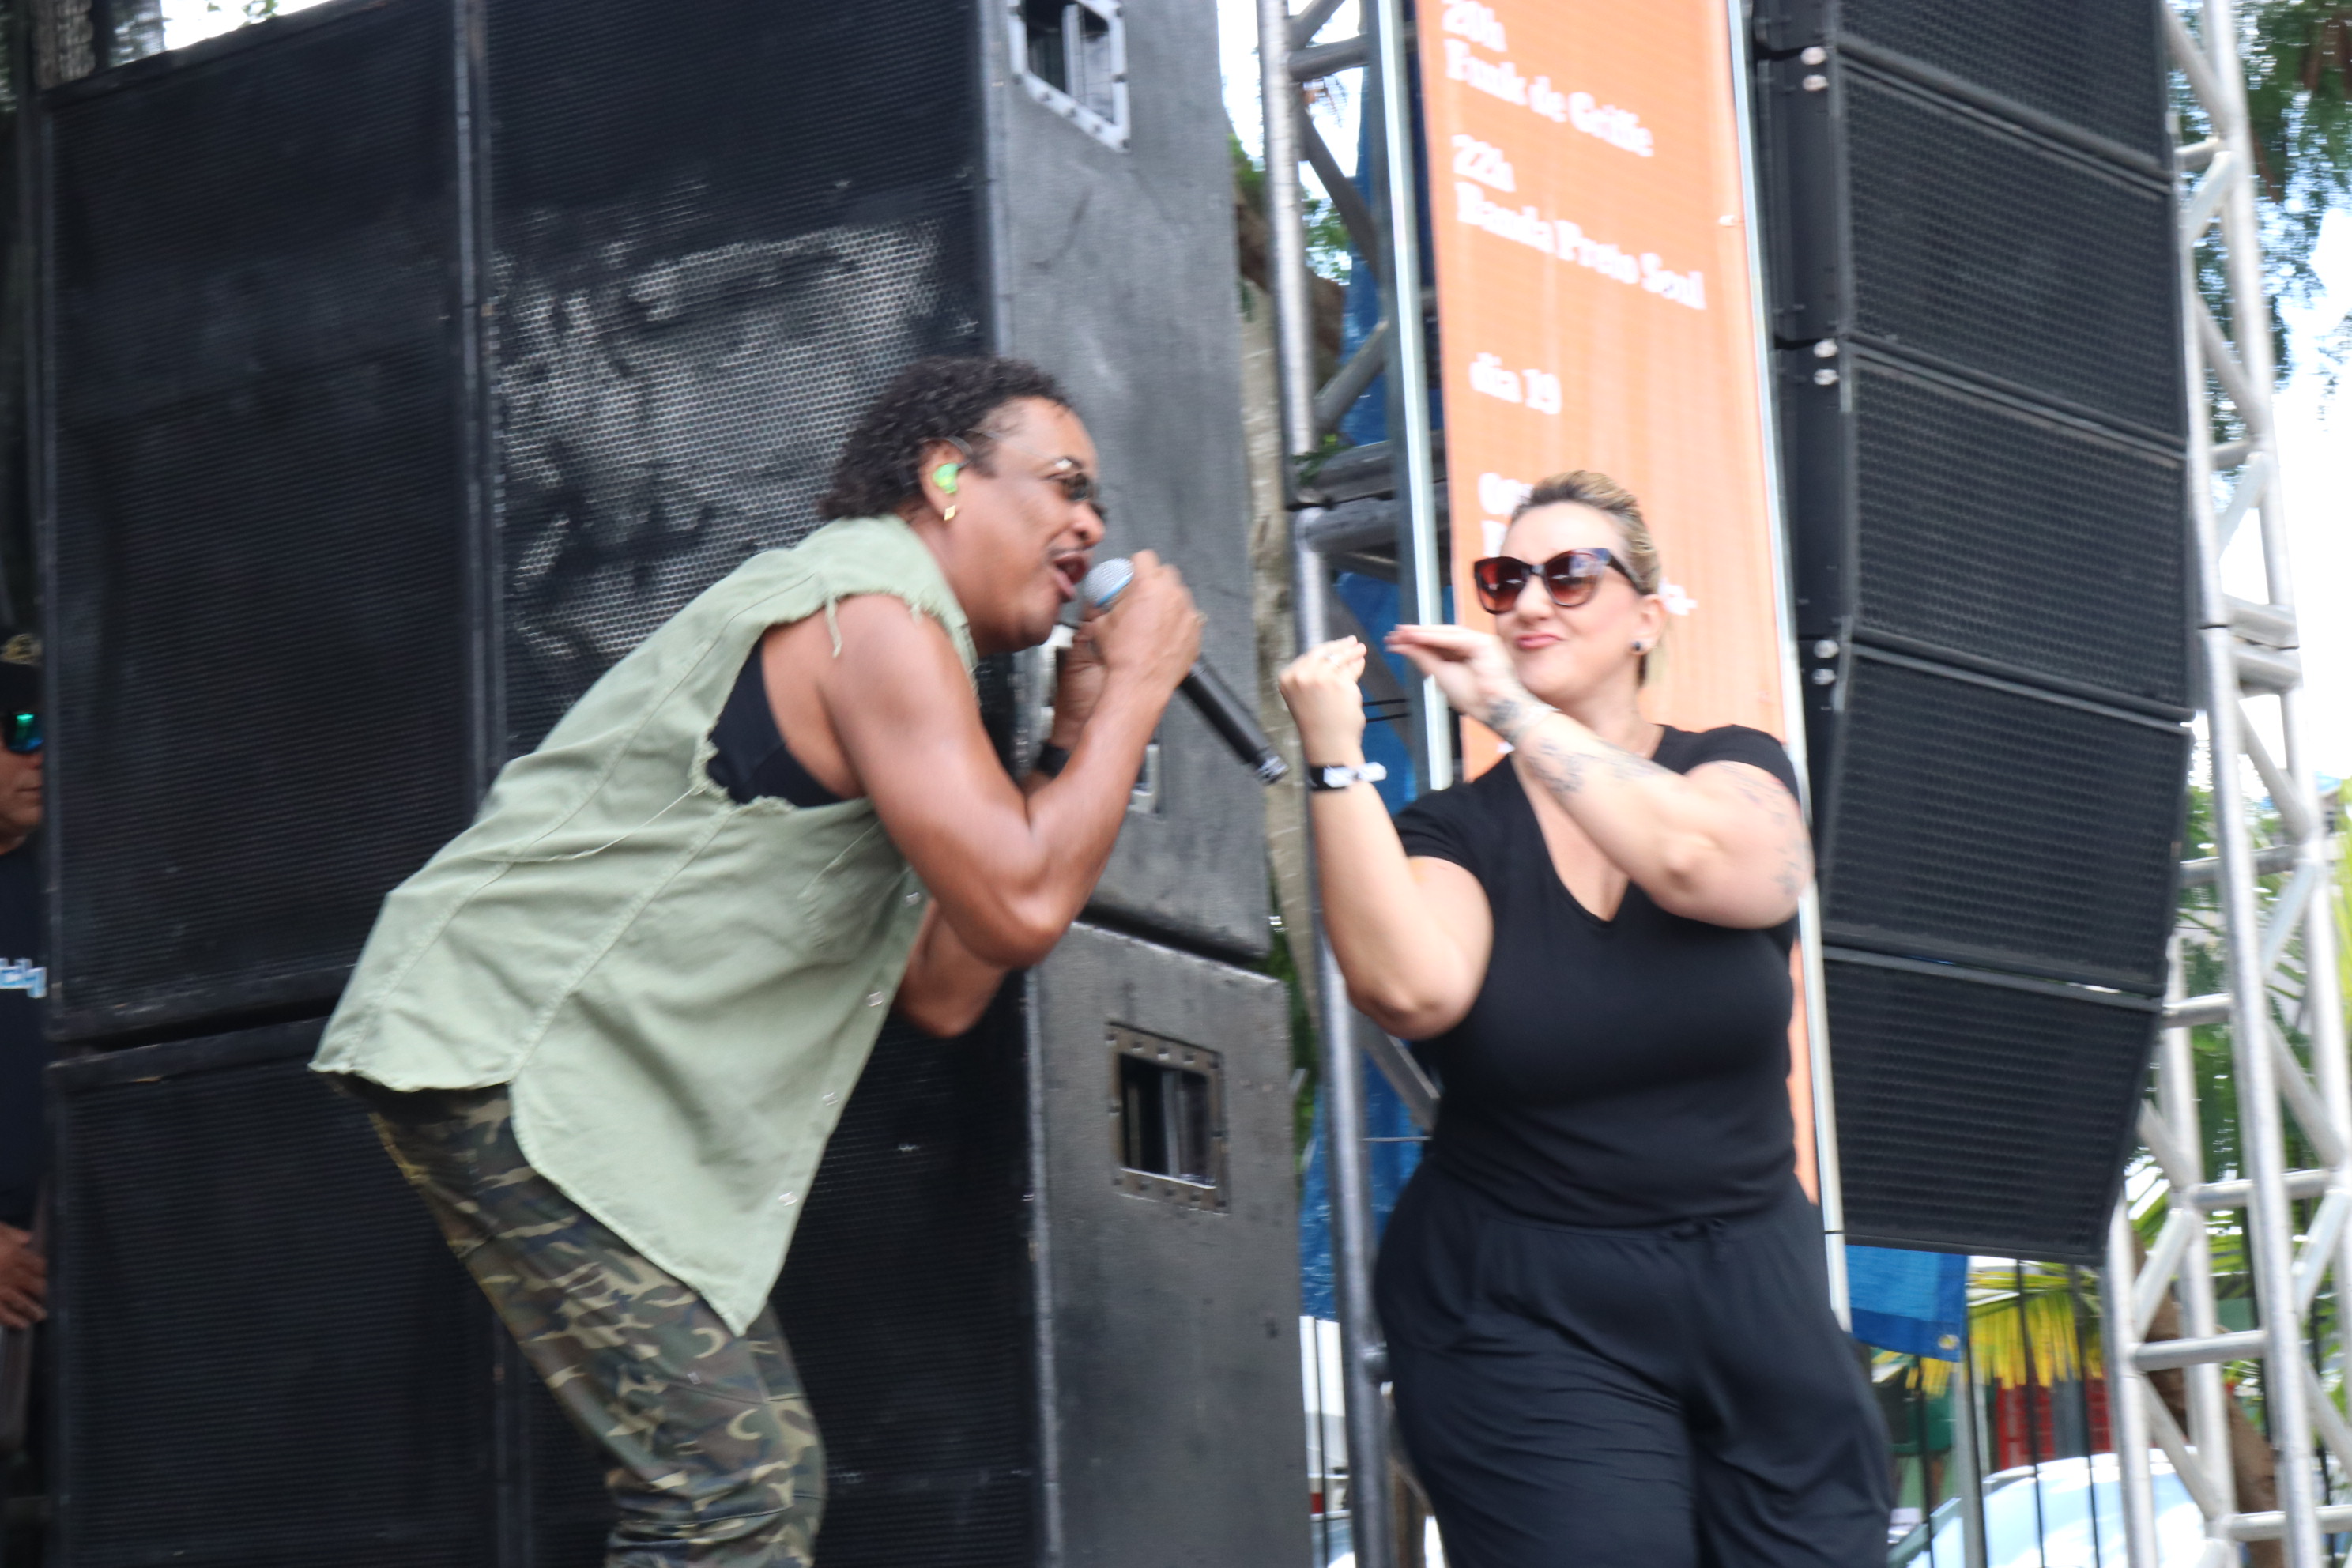 Vocalista Cumpadre Washington canta ao lado de mulher interprete de libras no palco